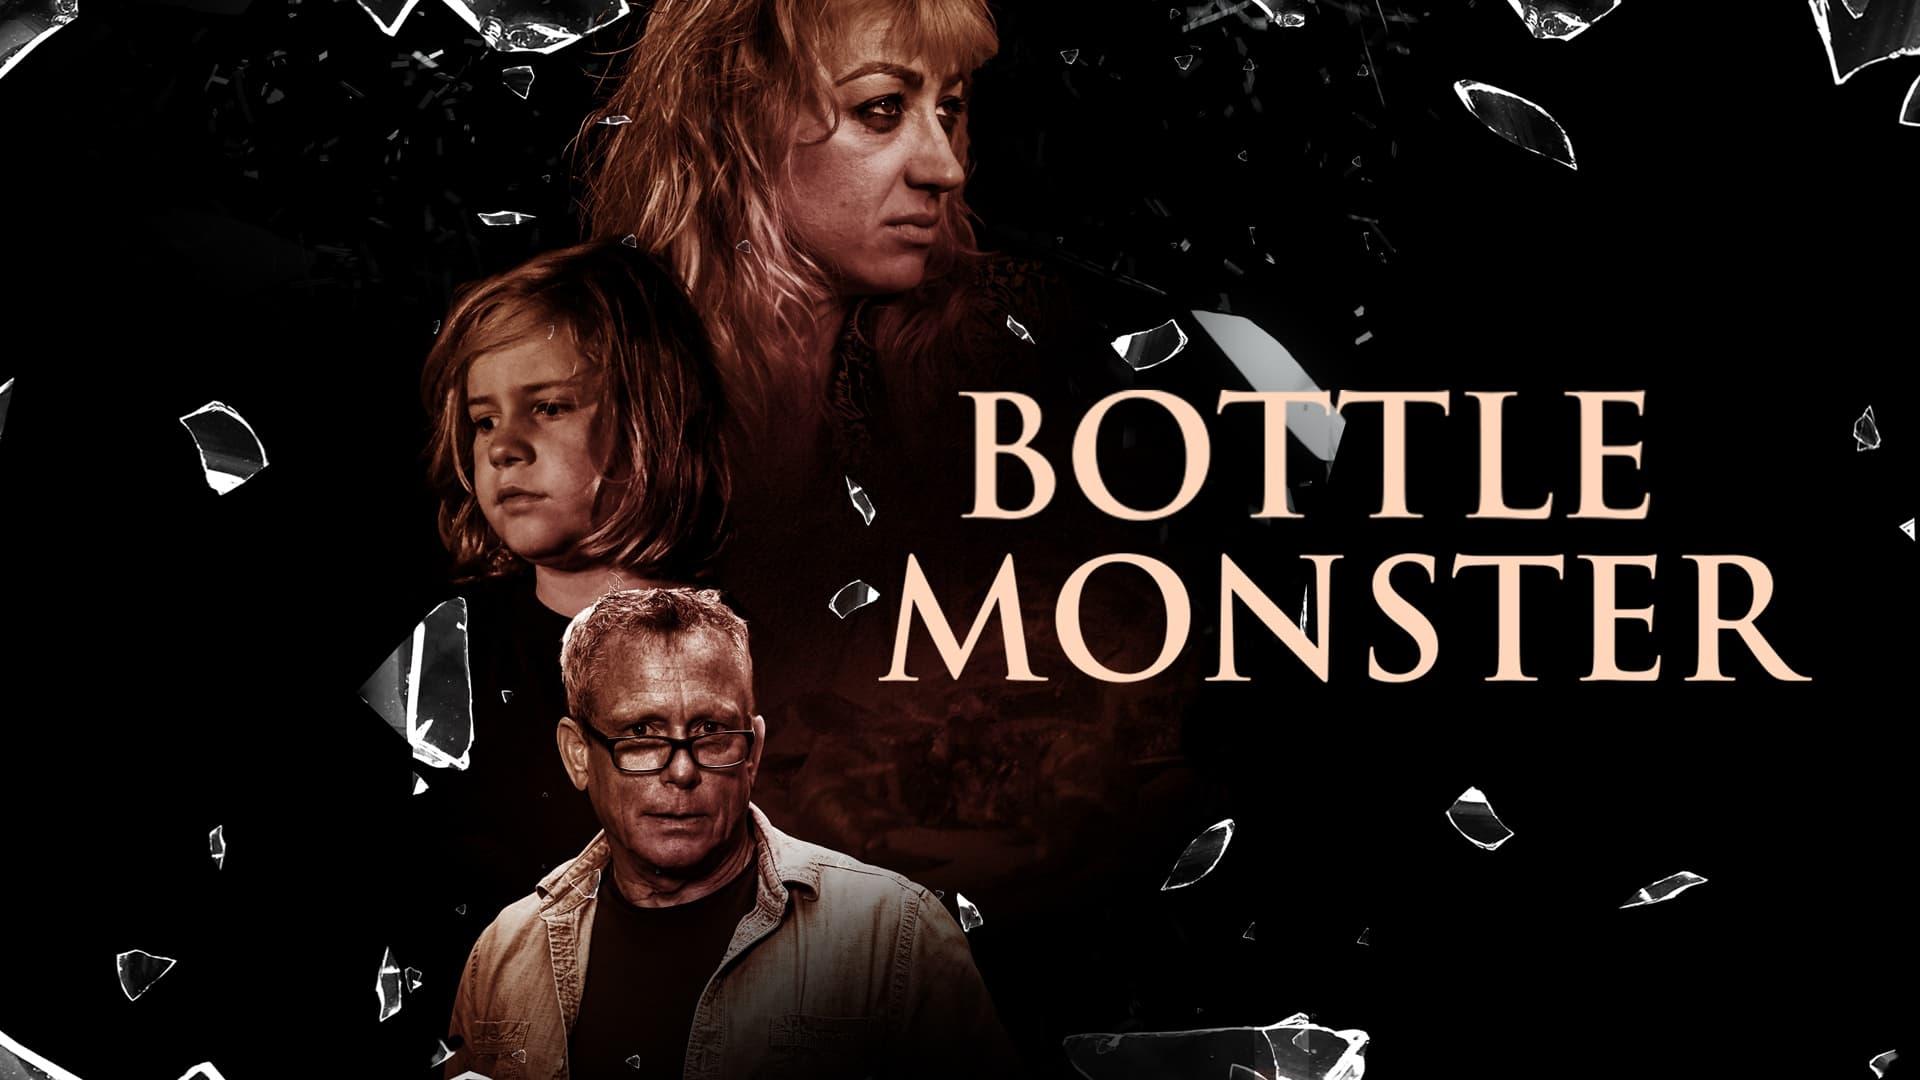 Bottle Monster backdrop